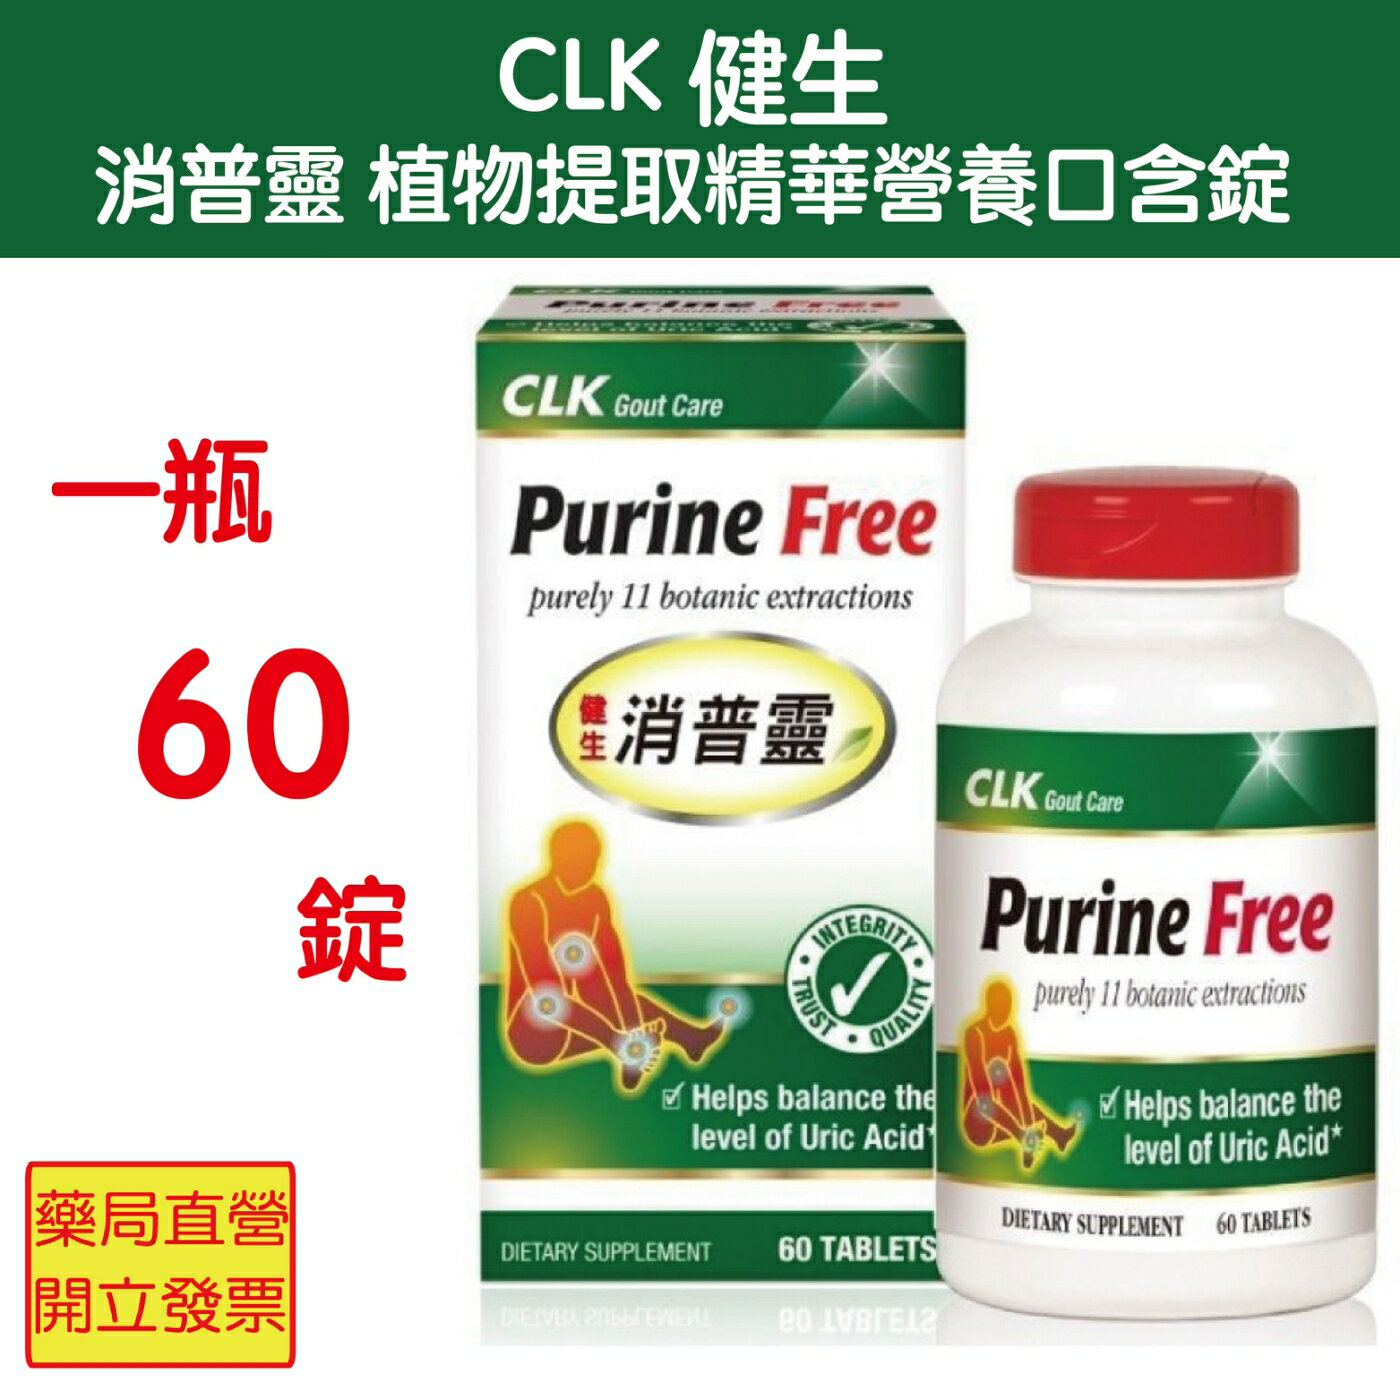 CLK健生消普靈植物提取精華營養口含錠 60粒/瓶